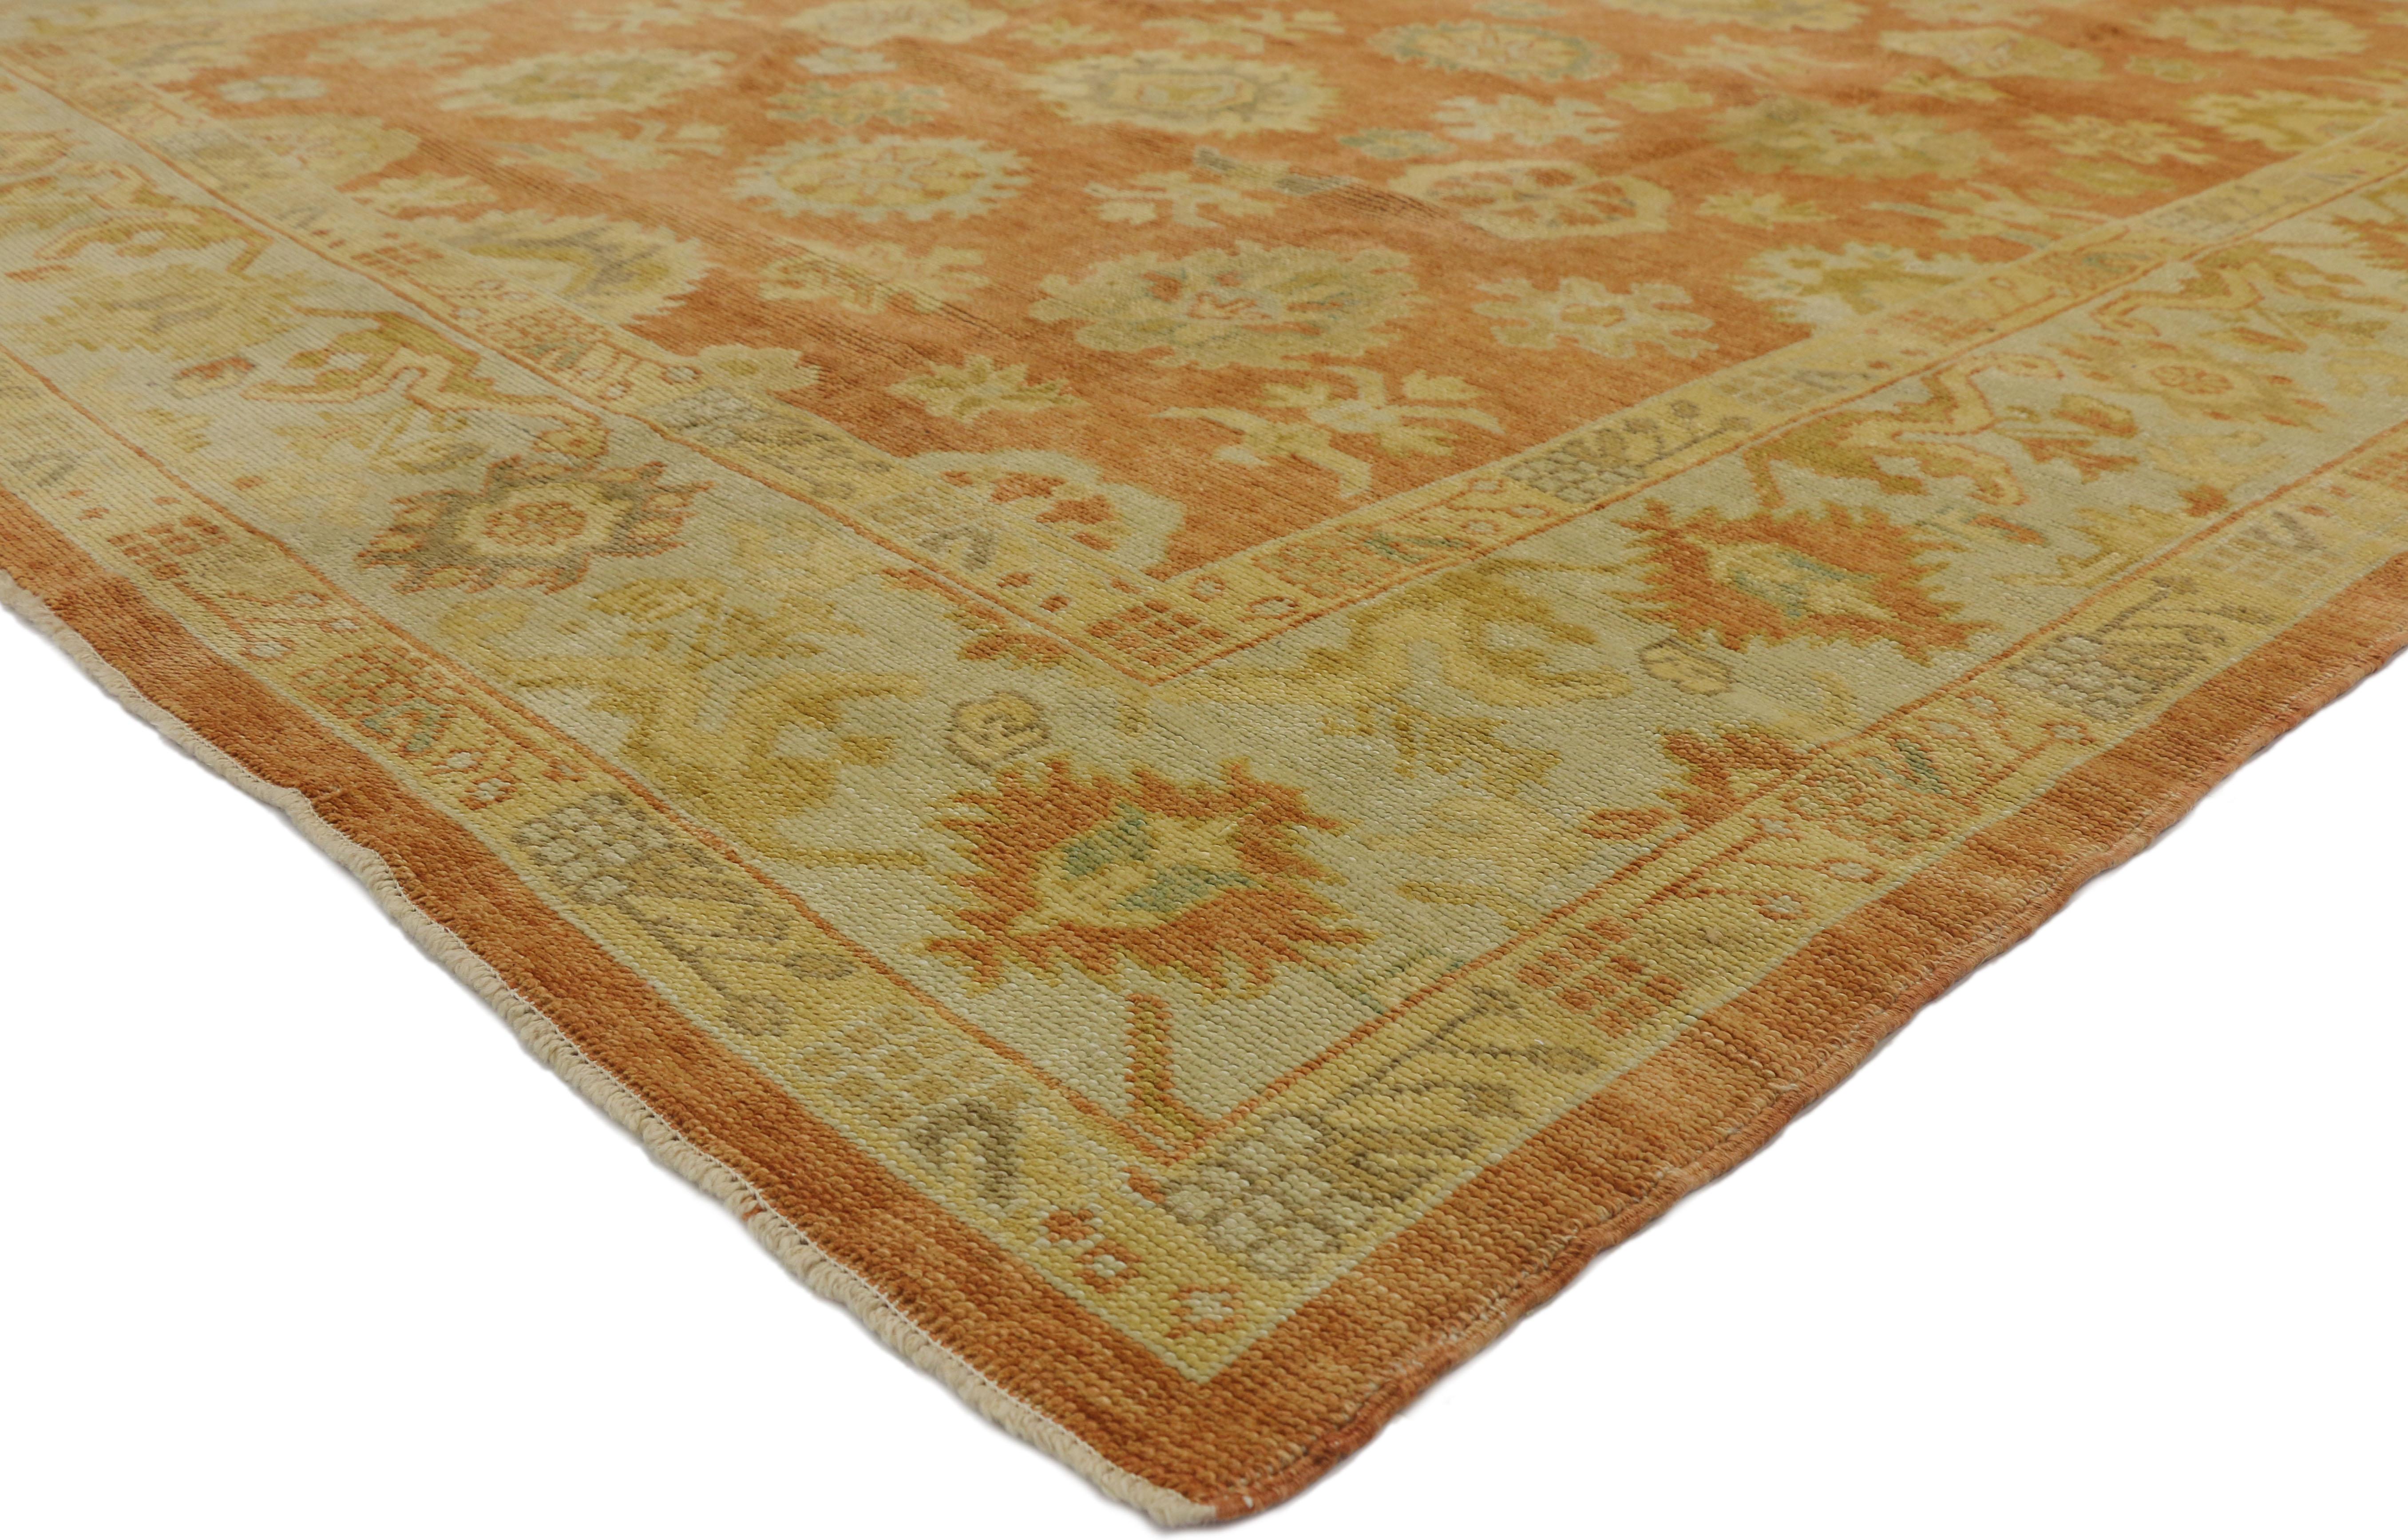 50536 nouveau tapis contemporain turc Oushak au style rustique toscan. Ce tapis contemporain Oushak en laine nouée à la main présente un motif géométrique sur toute sa surface, composé de motifs de style Harshang, de palmettes fleuries, de vrilles